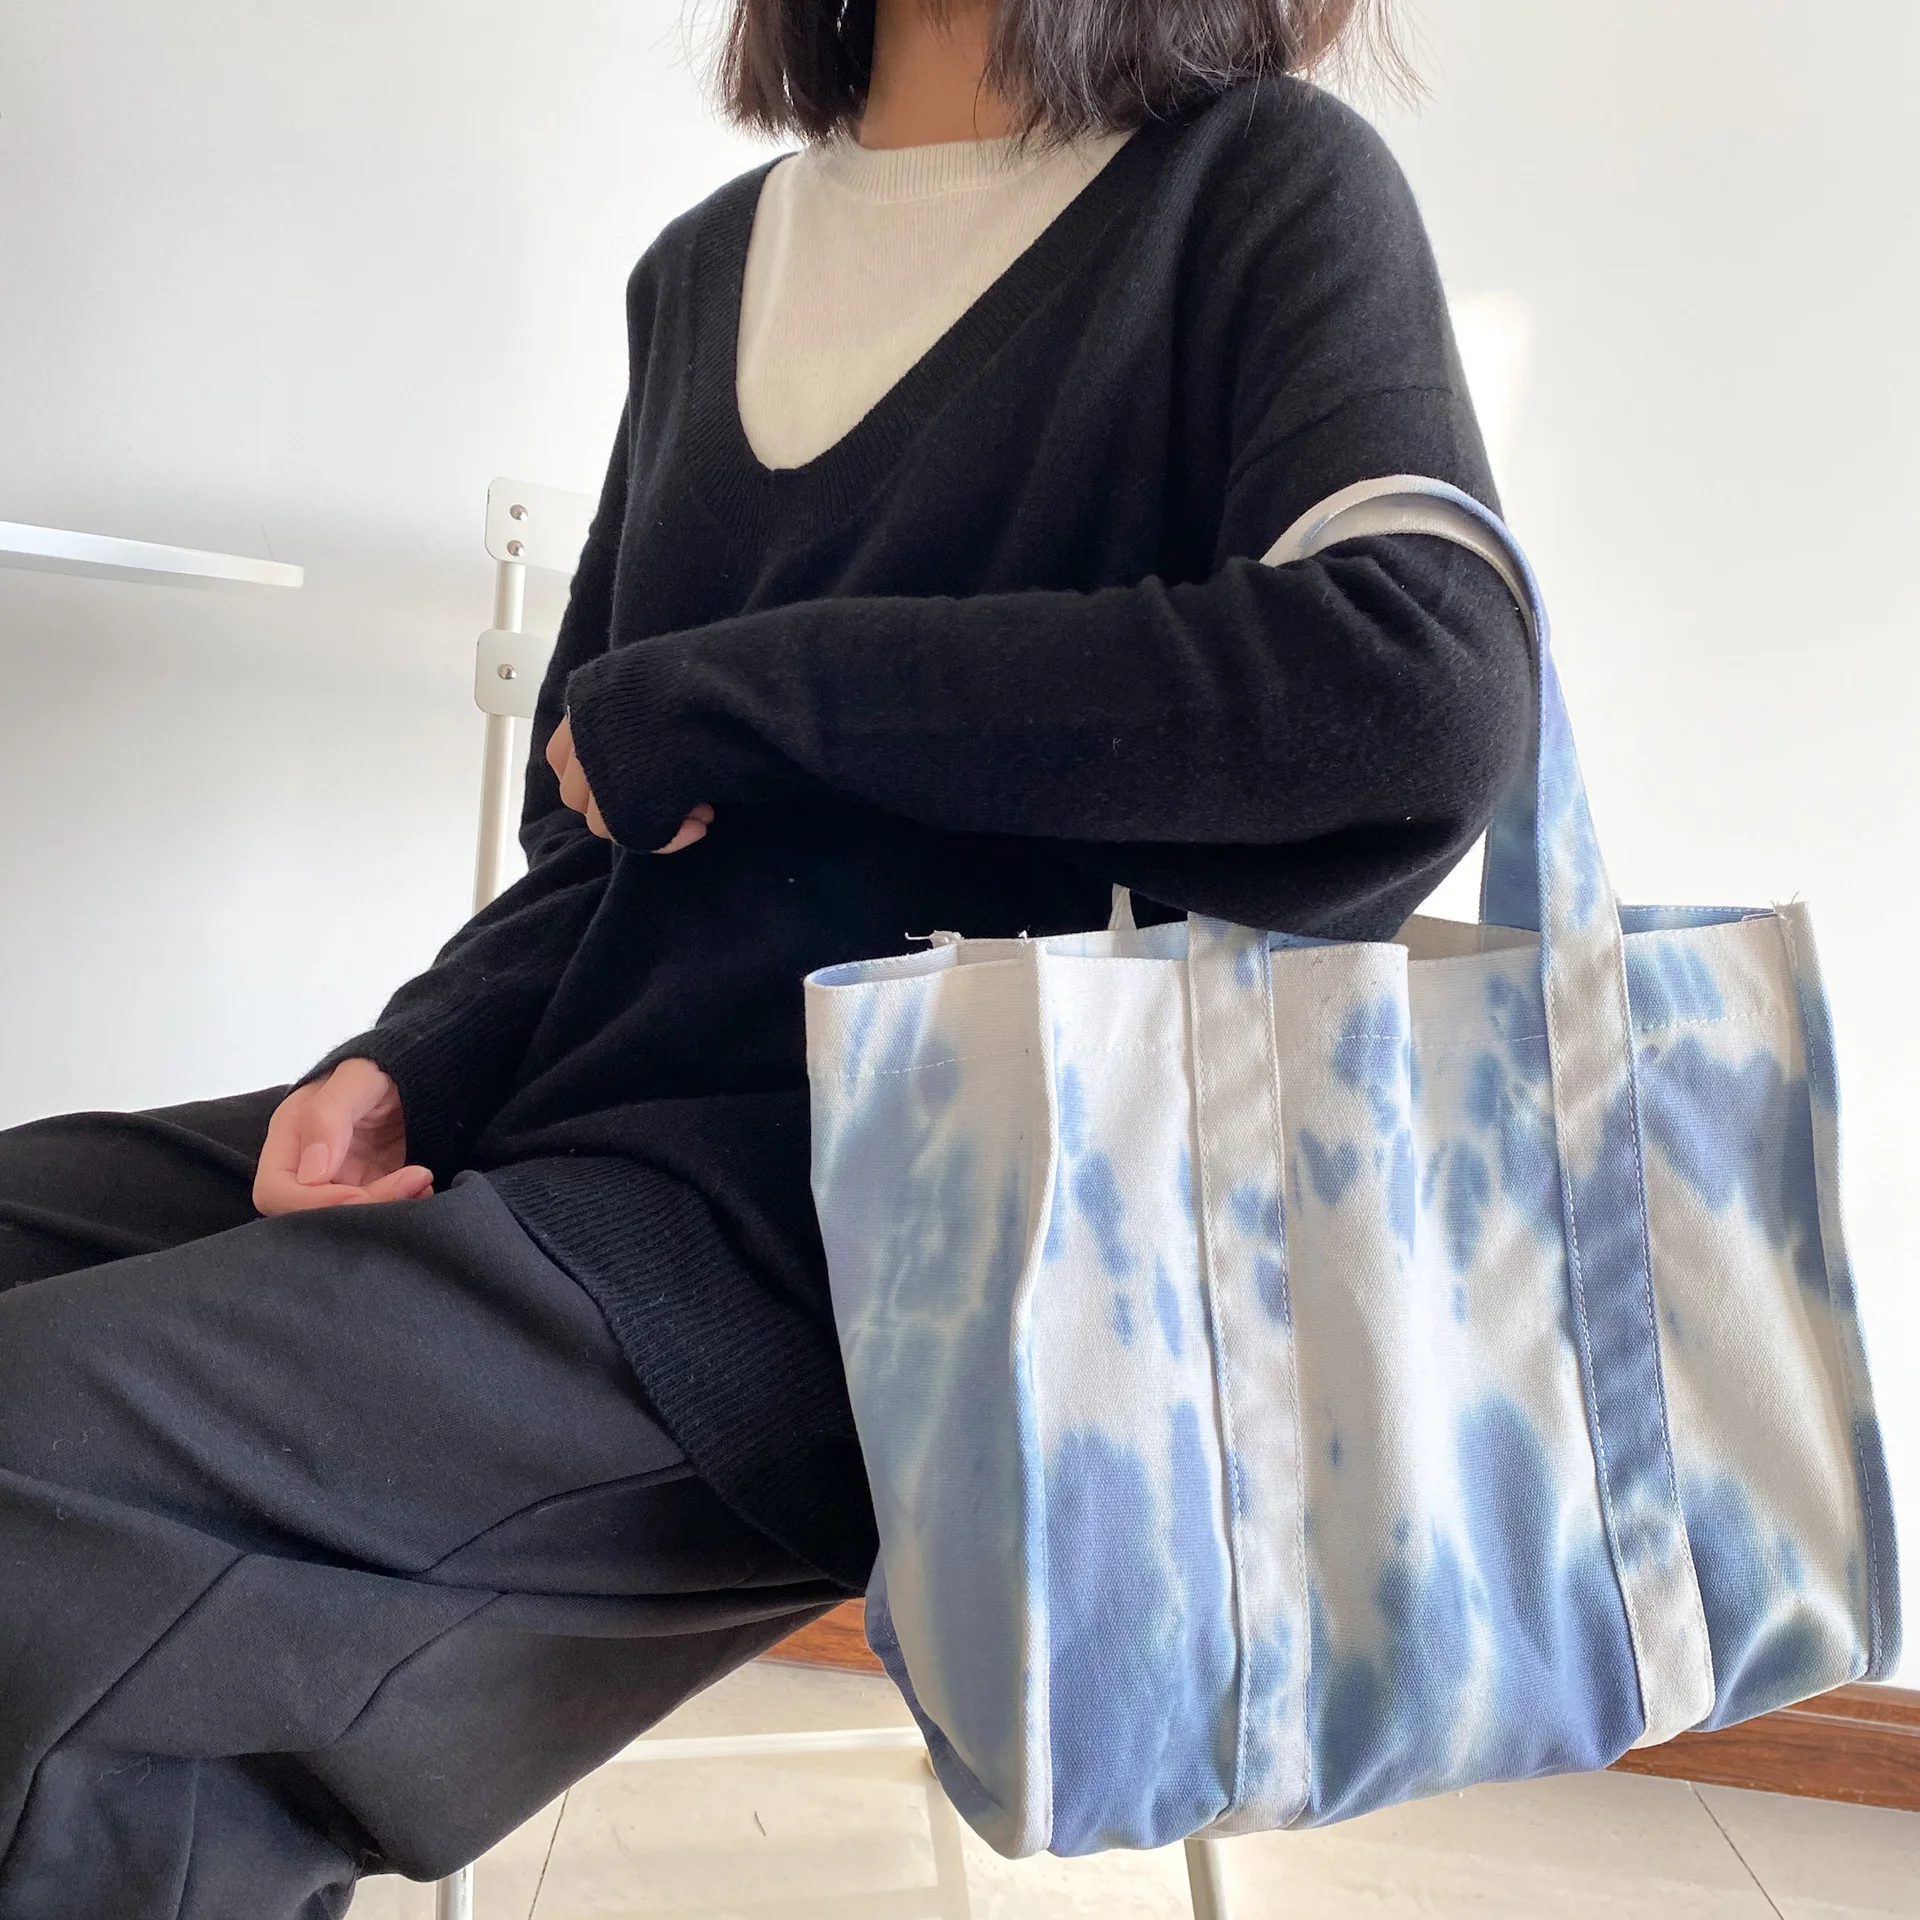 

Новая Холщовая Сумка для покупок 2021, вместительная обычная сумка-тоут, модная женская сумка через плечо с цветным принтом, простые сумки